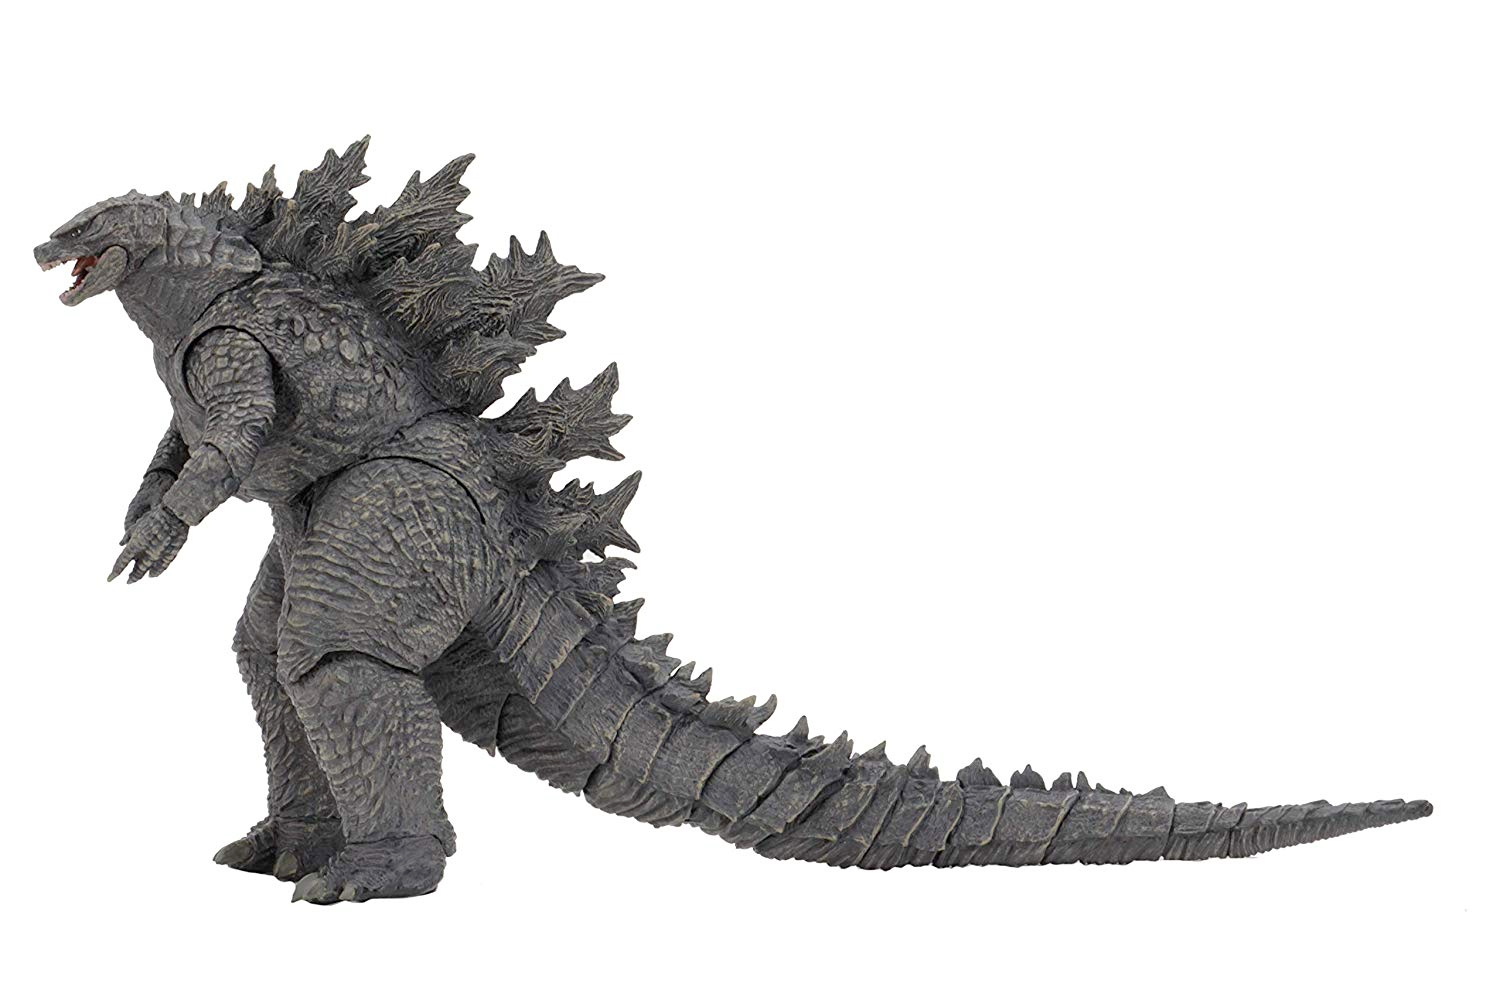 Godzilla 2019 Godzilla 12-In Long Action Figure